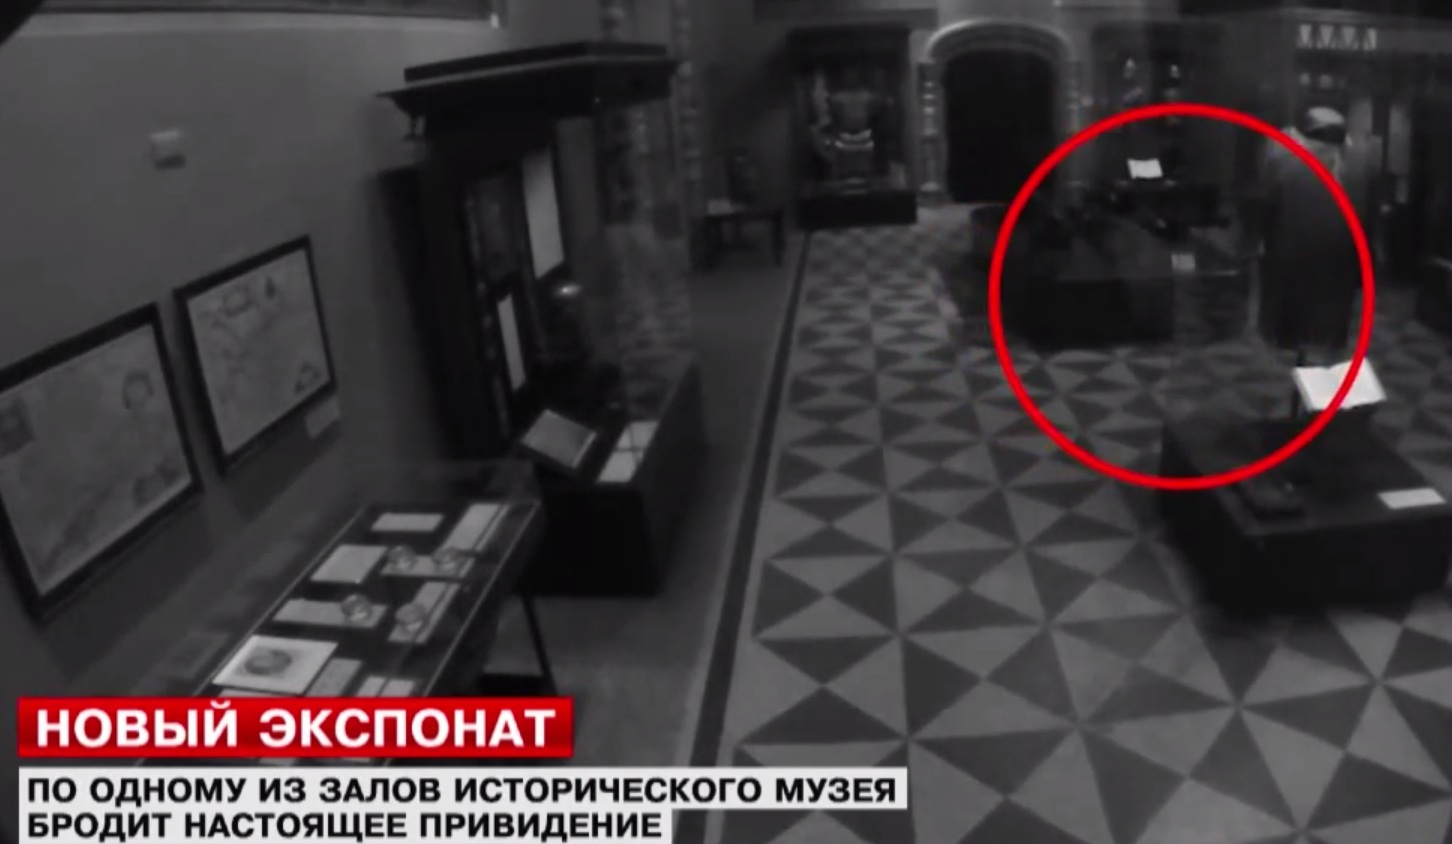 Заснеха привидение в московски музей (ВИДЕО)